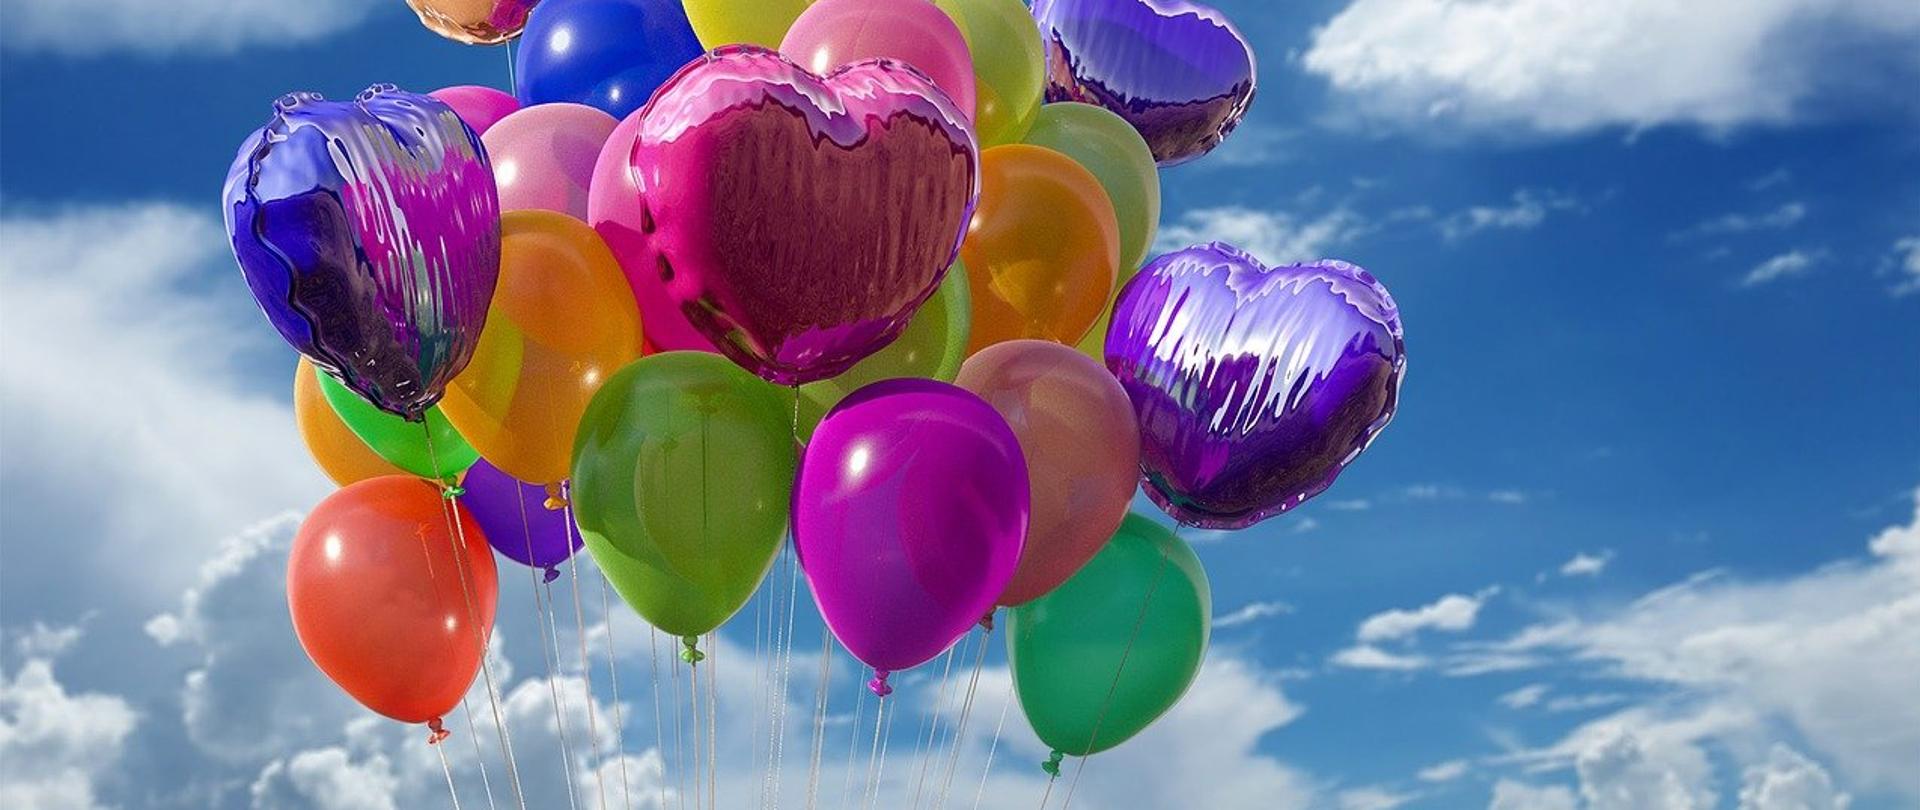 Na tle niebieskiego nieba upstrzonego białymi chmurkami unosi się balonowy bukiet, na który składają się różnokolorowe, okrągłe balony i foliowe balony w kształcie serca. 